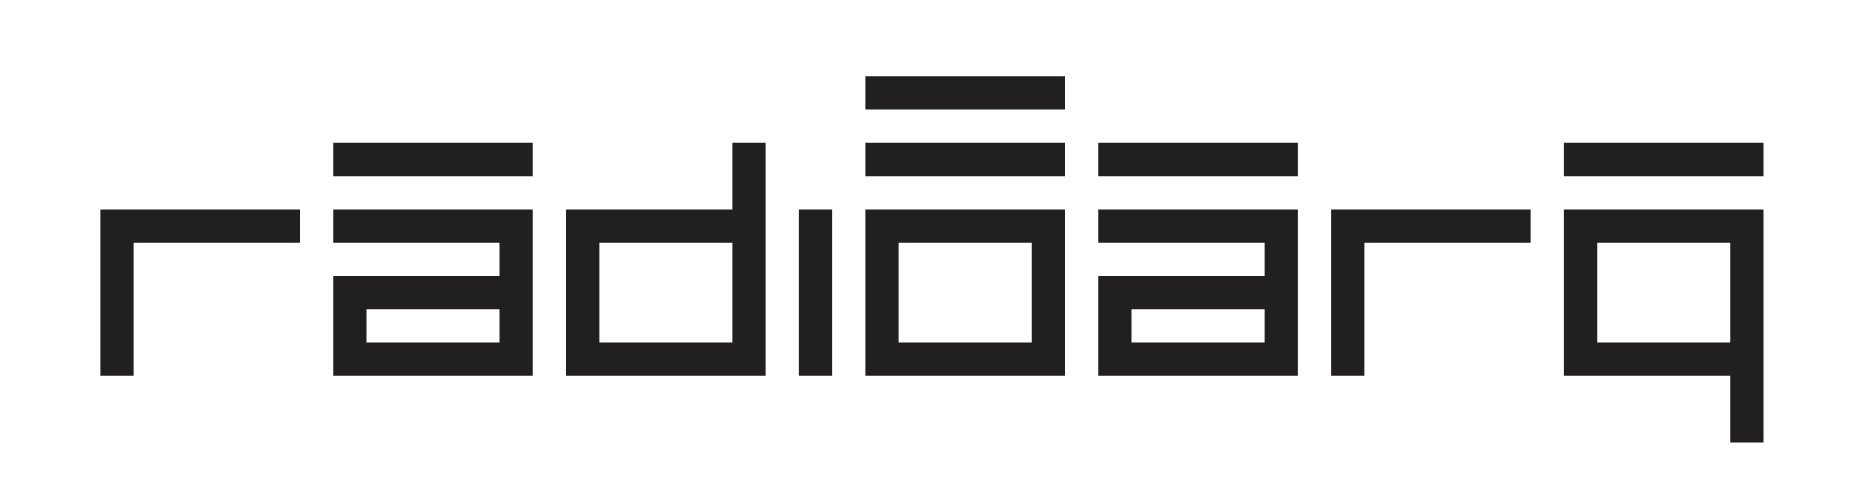 radioarq-logotipo_1.jpg